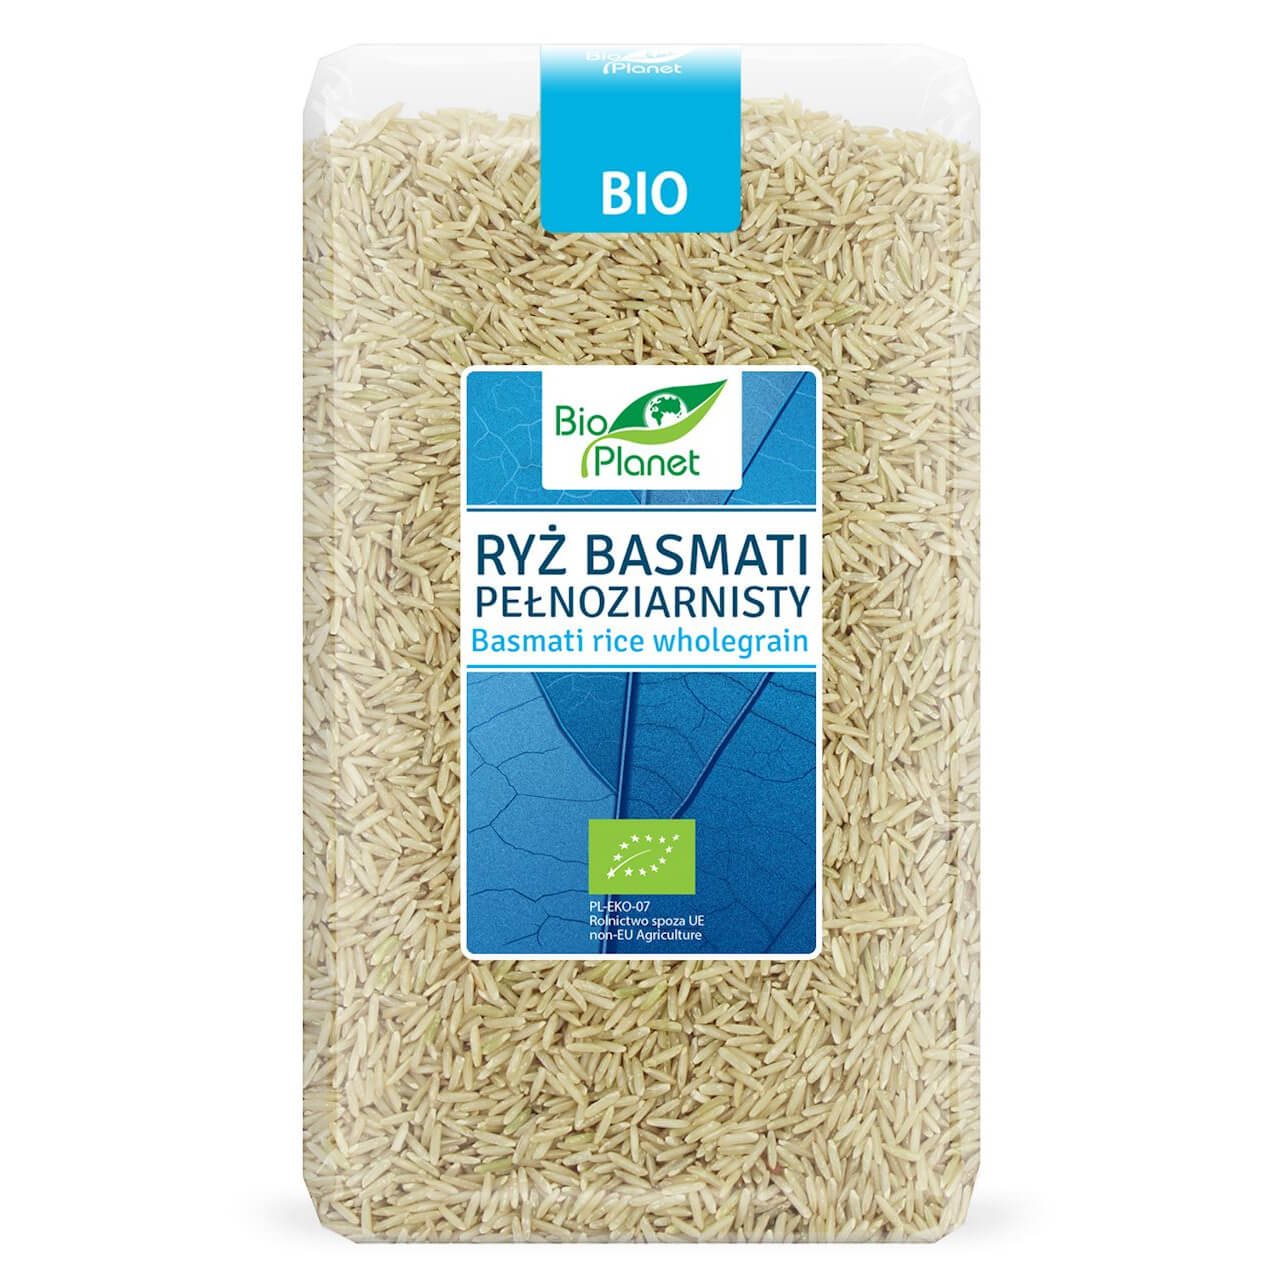 Ryż basmati pełnoziarnisty BIO 1 kg - Bio Planet